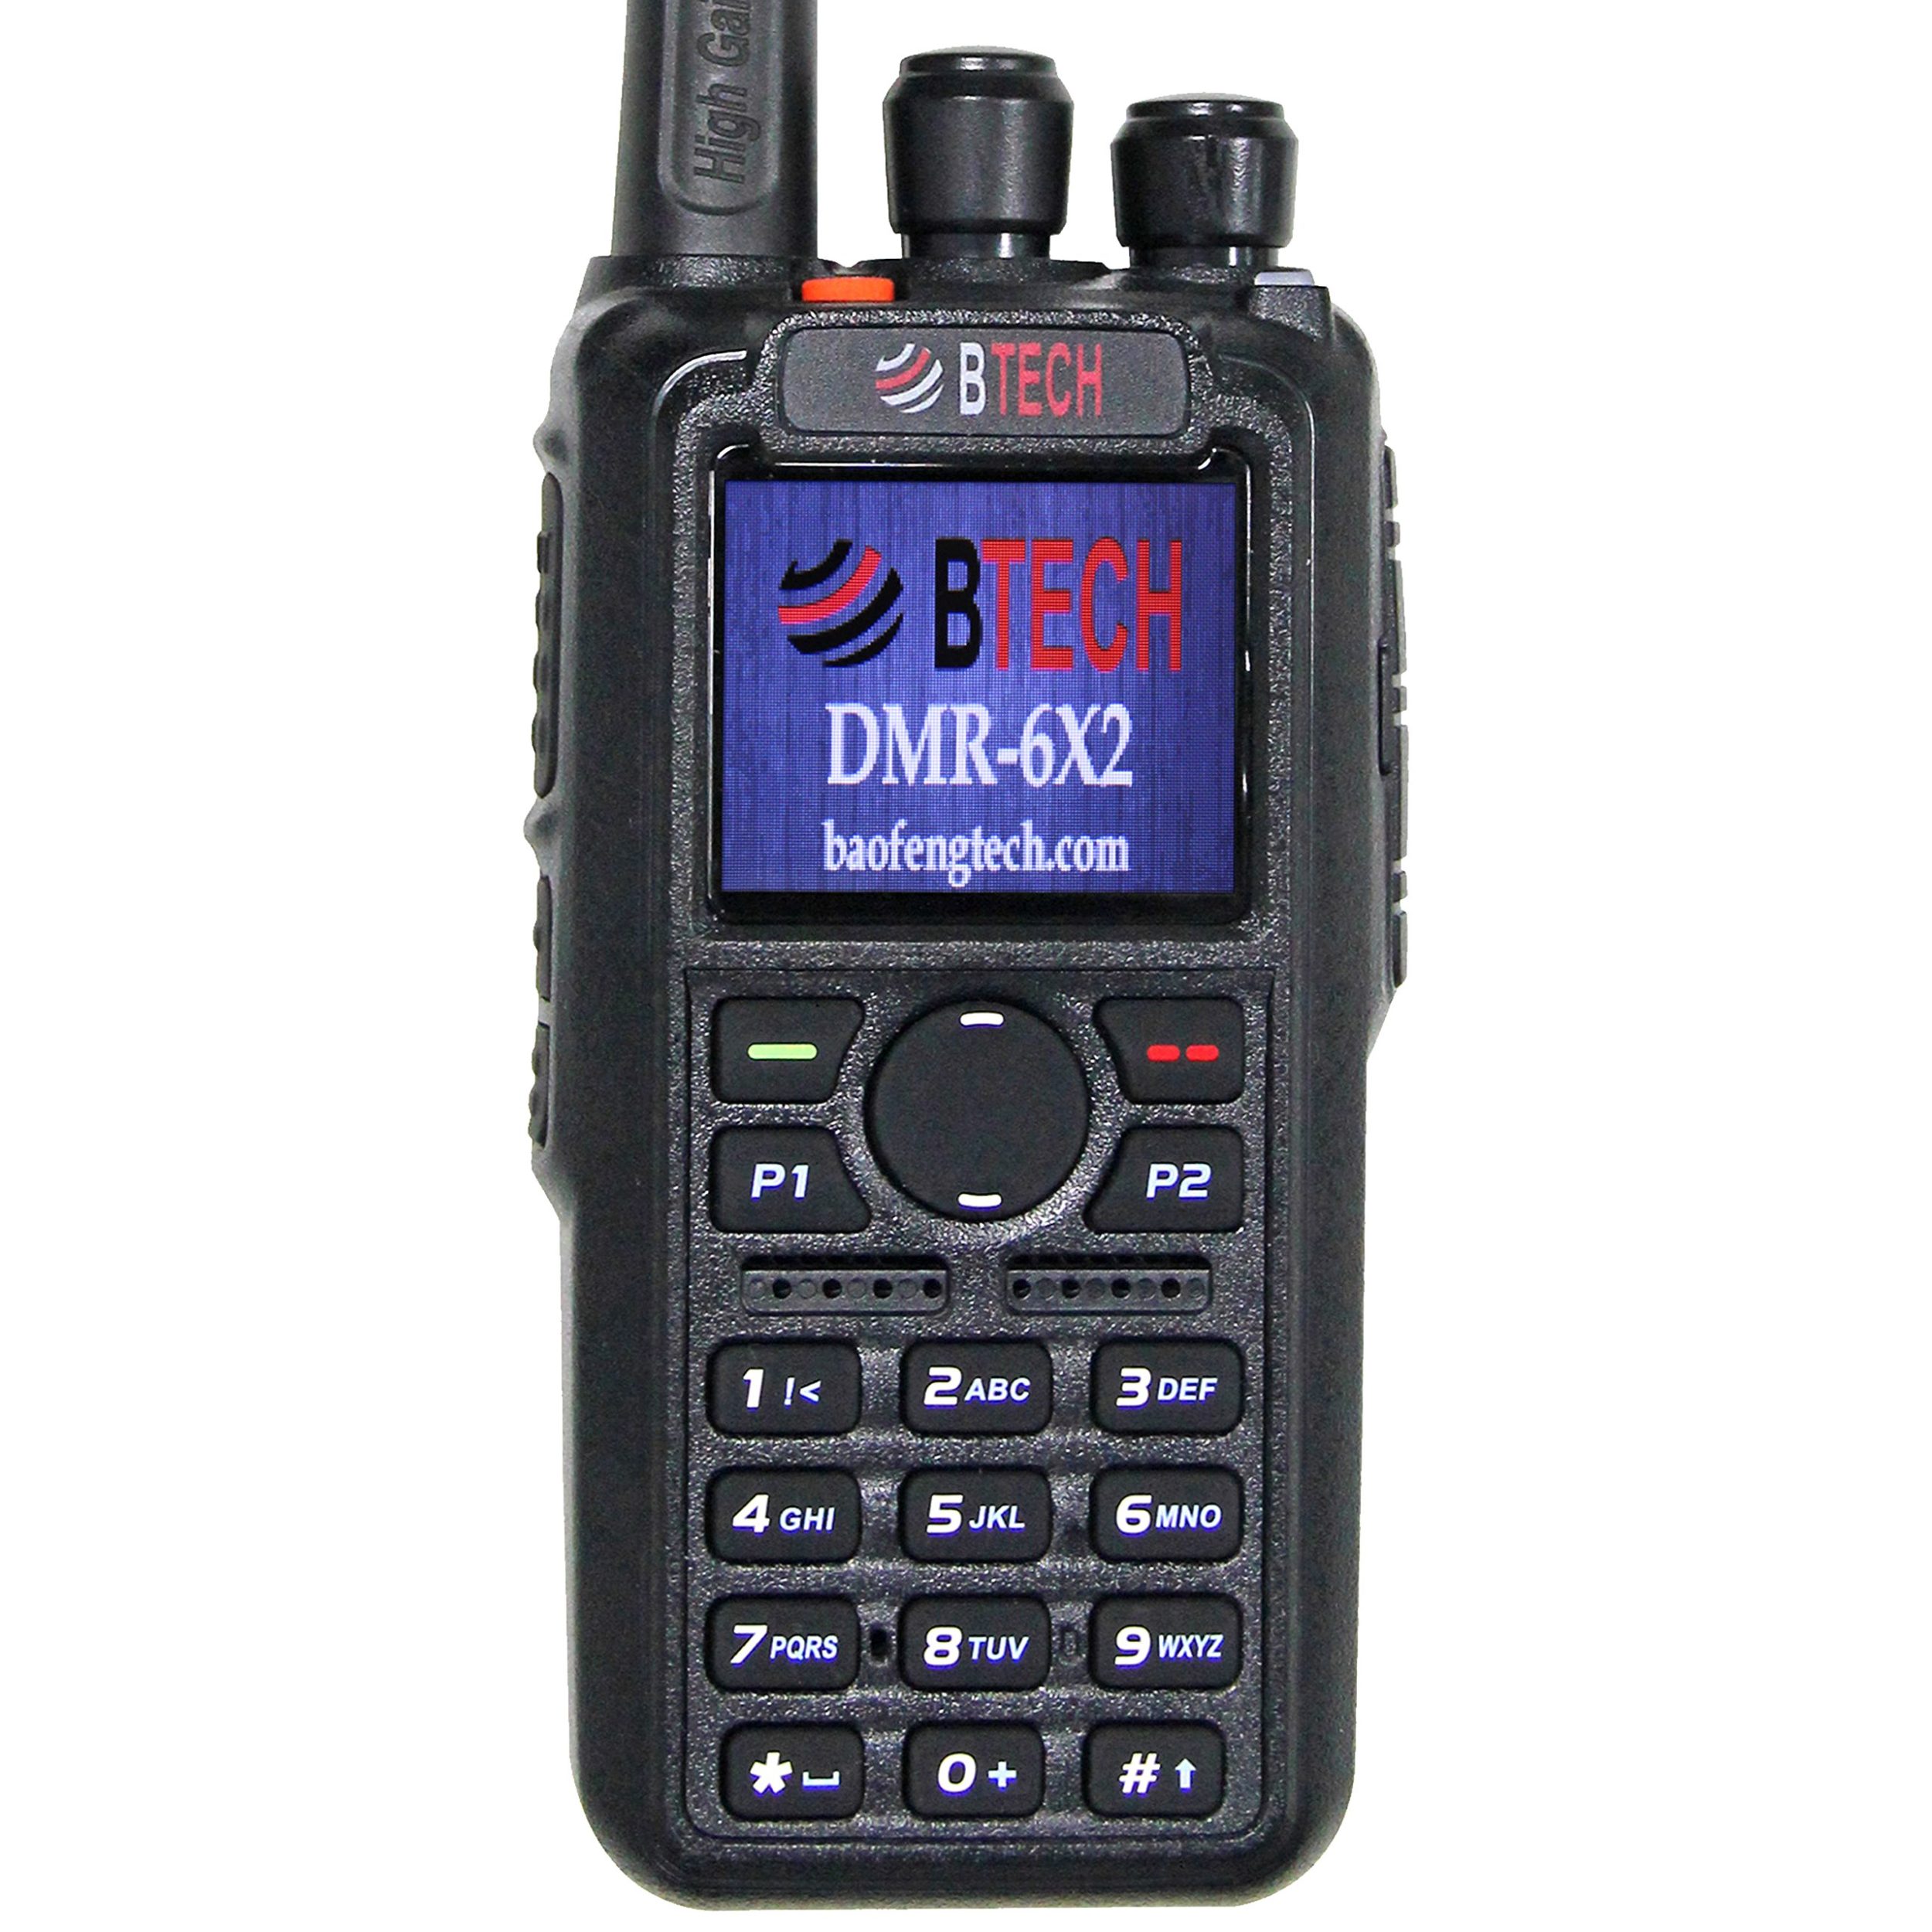 BTECH DMR-6X2 DMR Radio